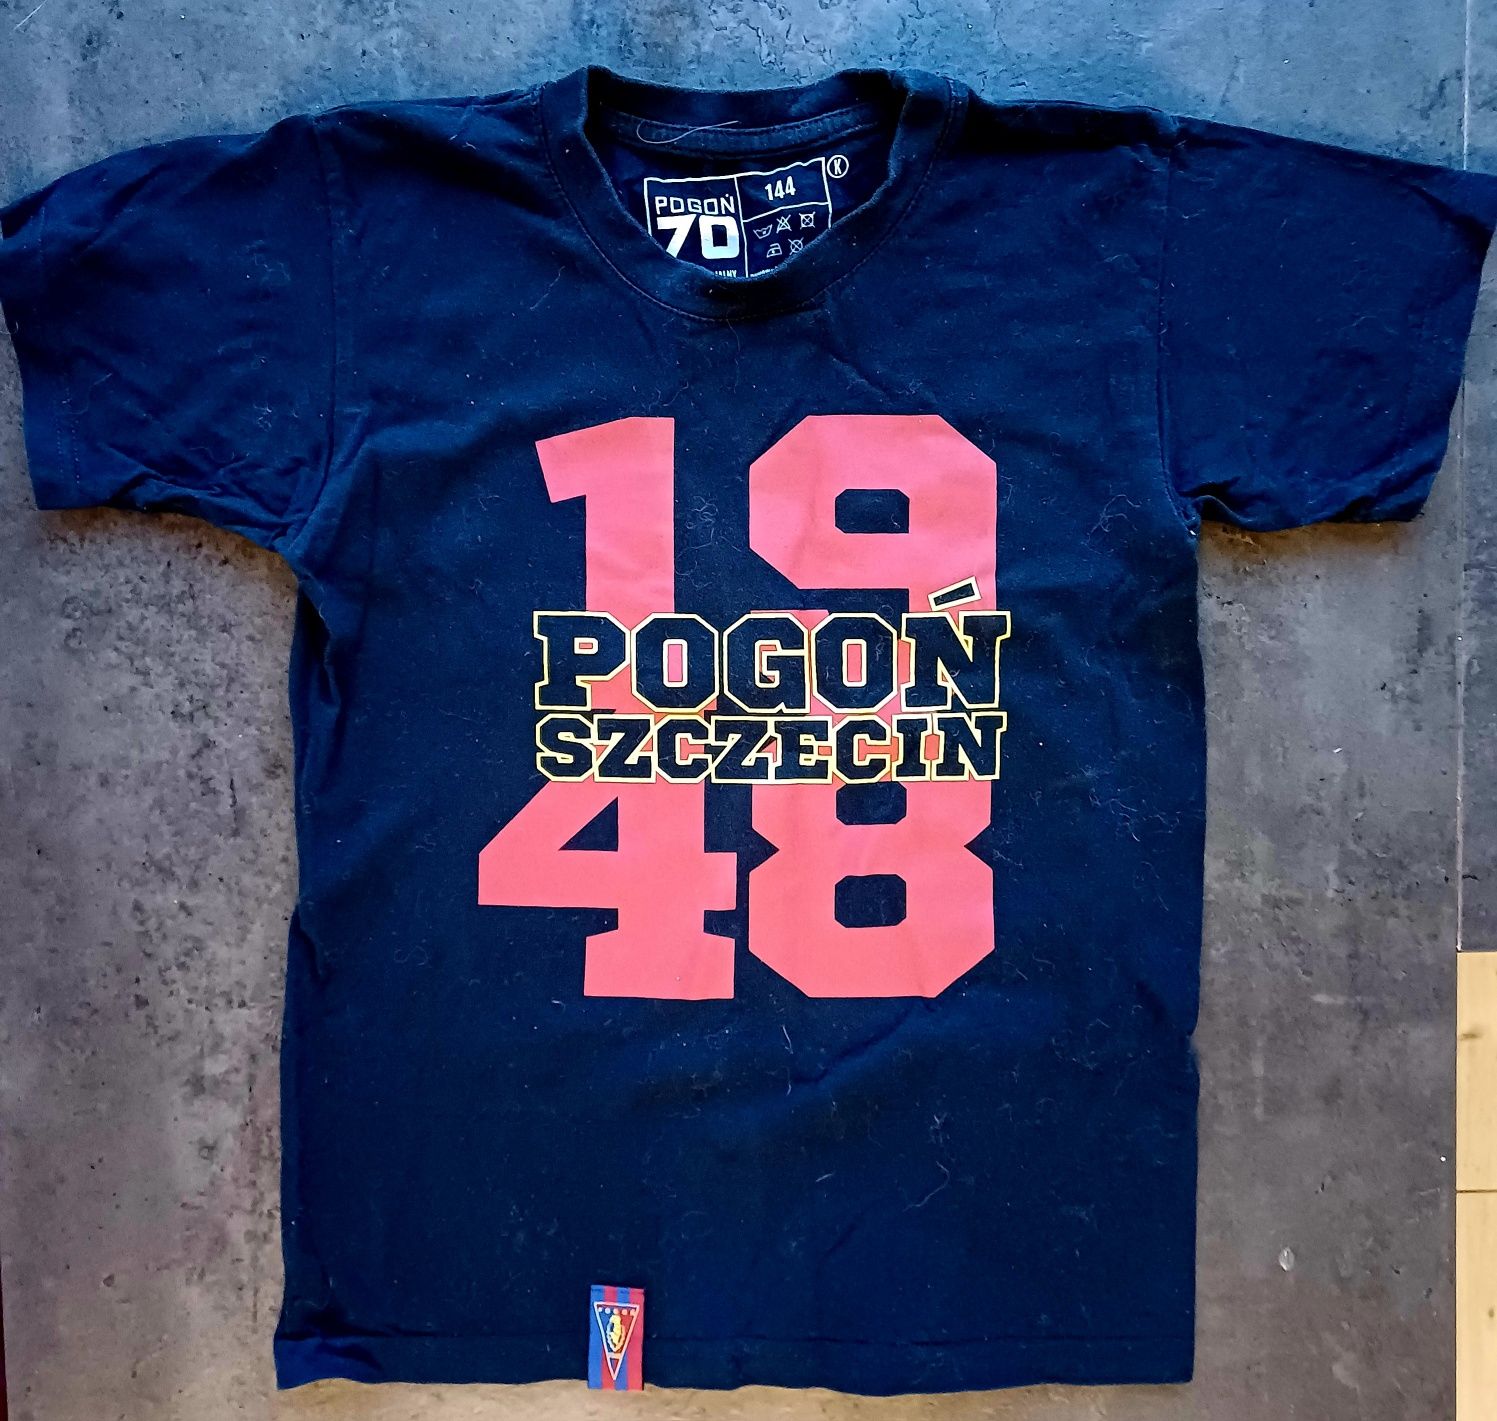 Koszulka Pogoń Szczecin rozmiar 144